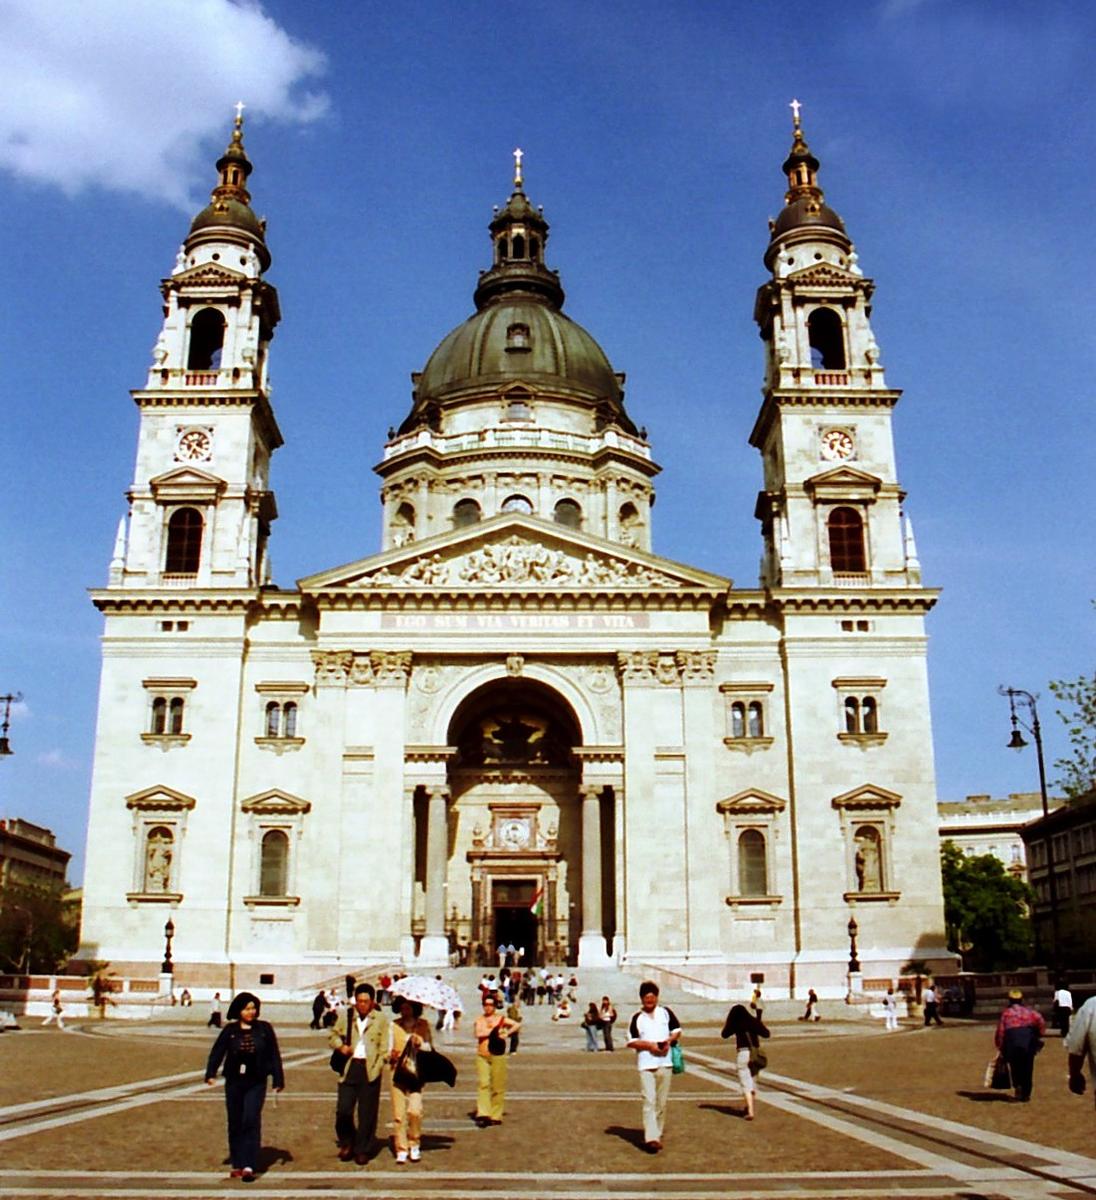 Szent István Basilica 